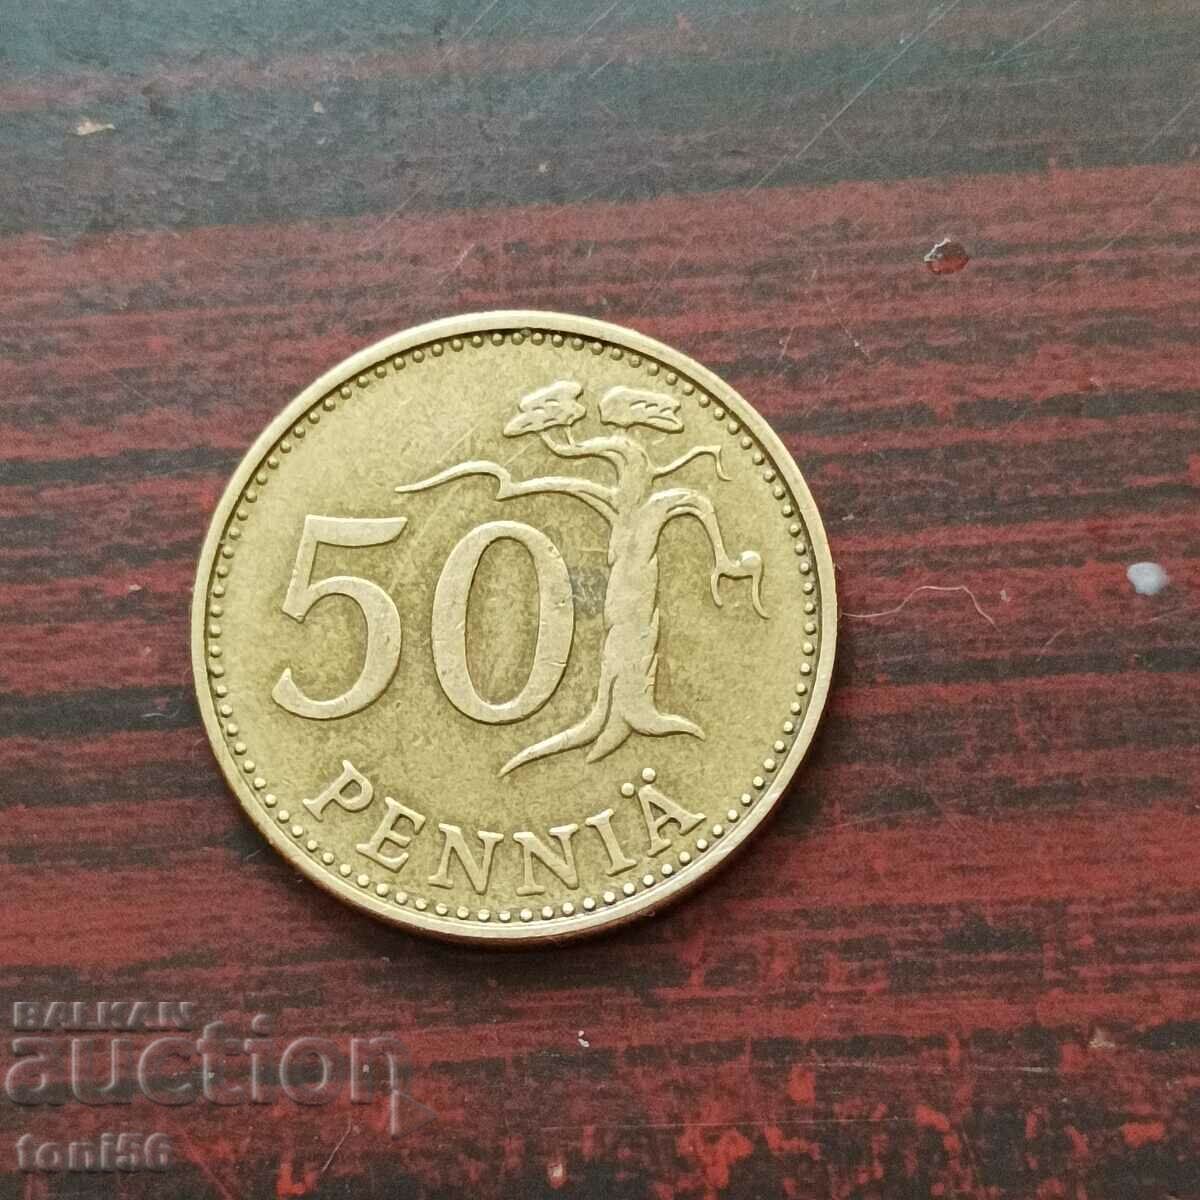 Φινλανδικό σετ 4 νομισμάτων